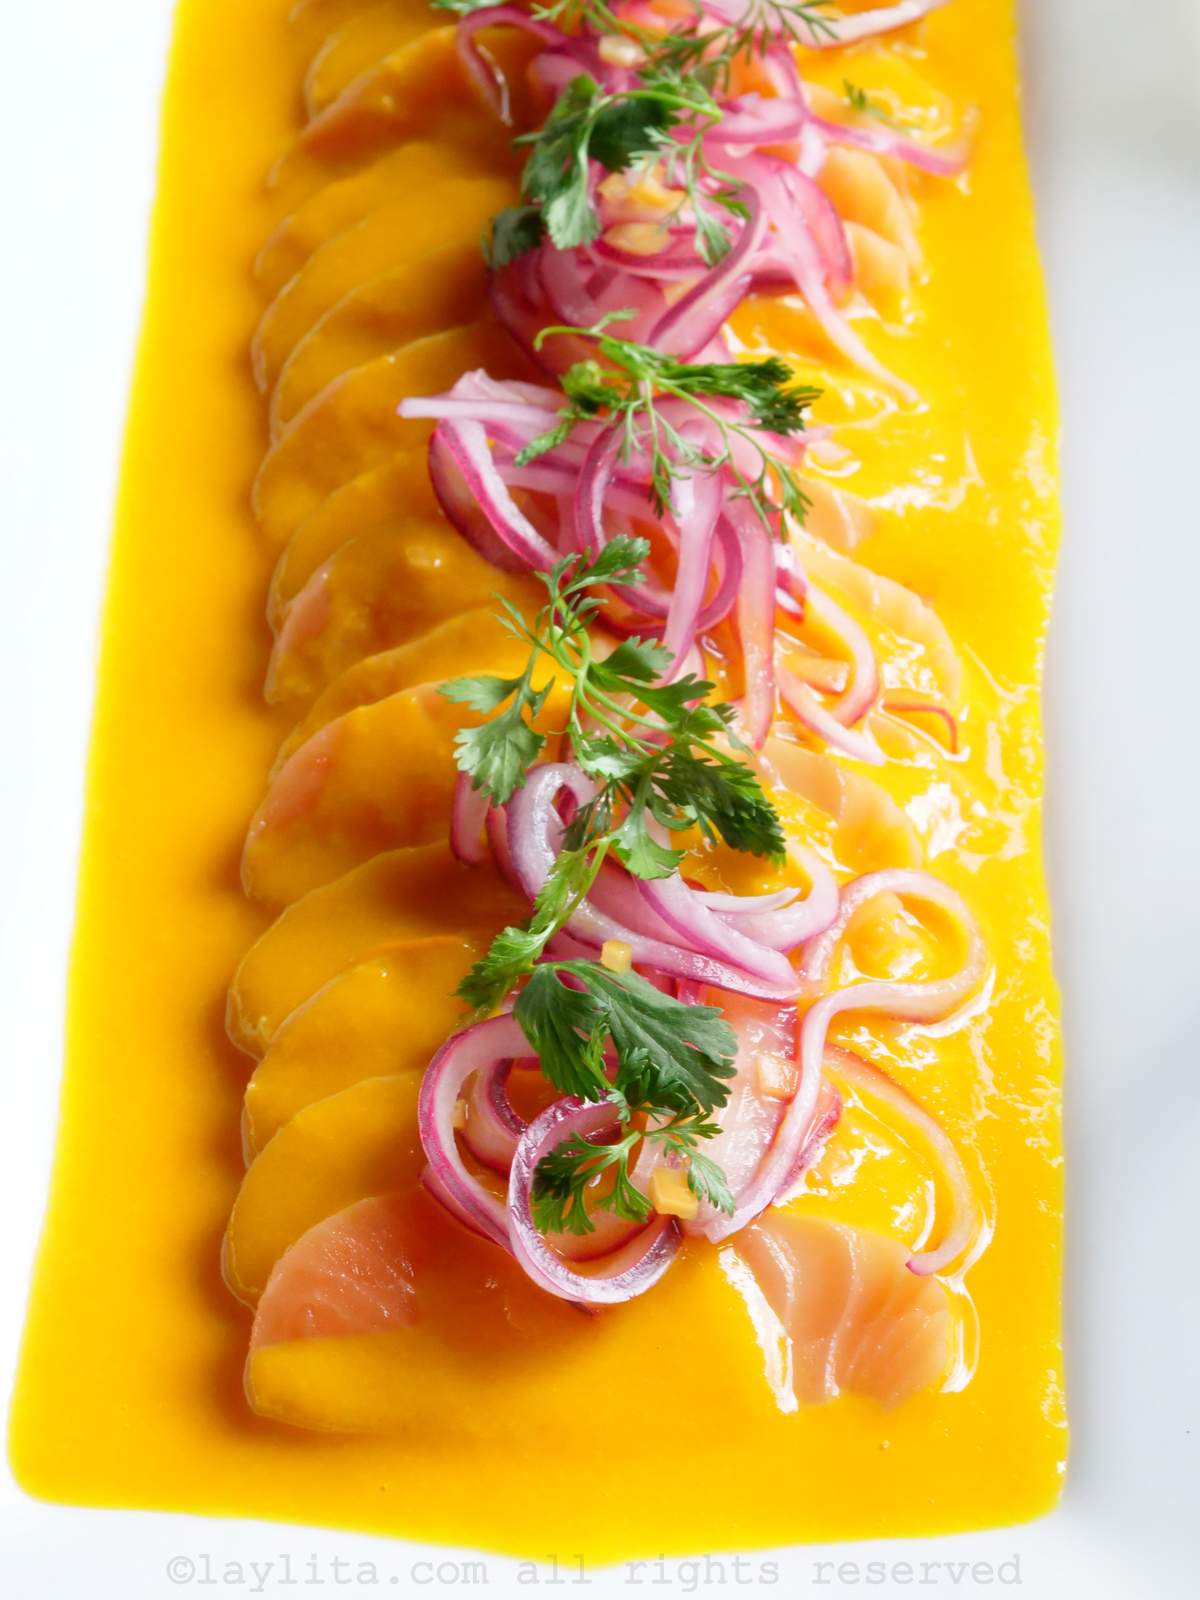 Tiradito péruvien à base de saumon et de fruits de la passion